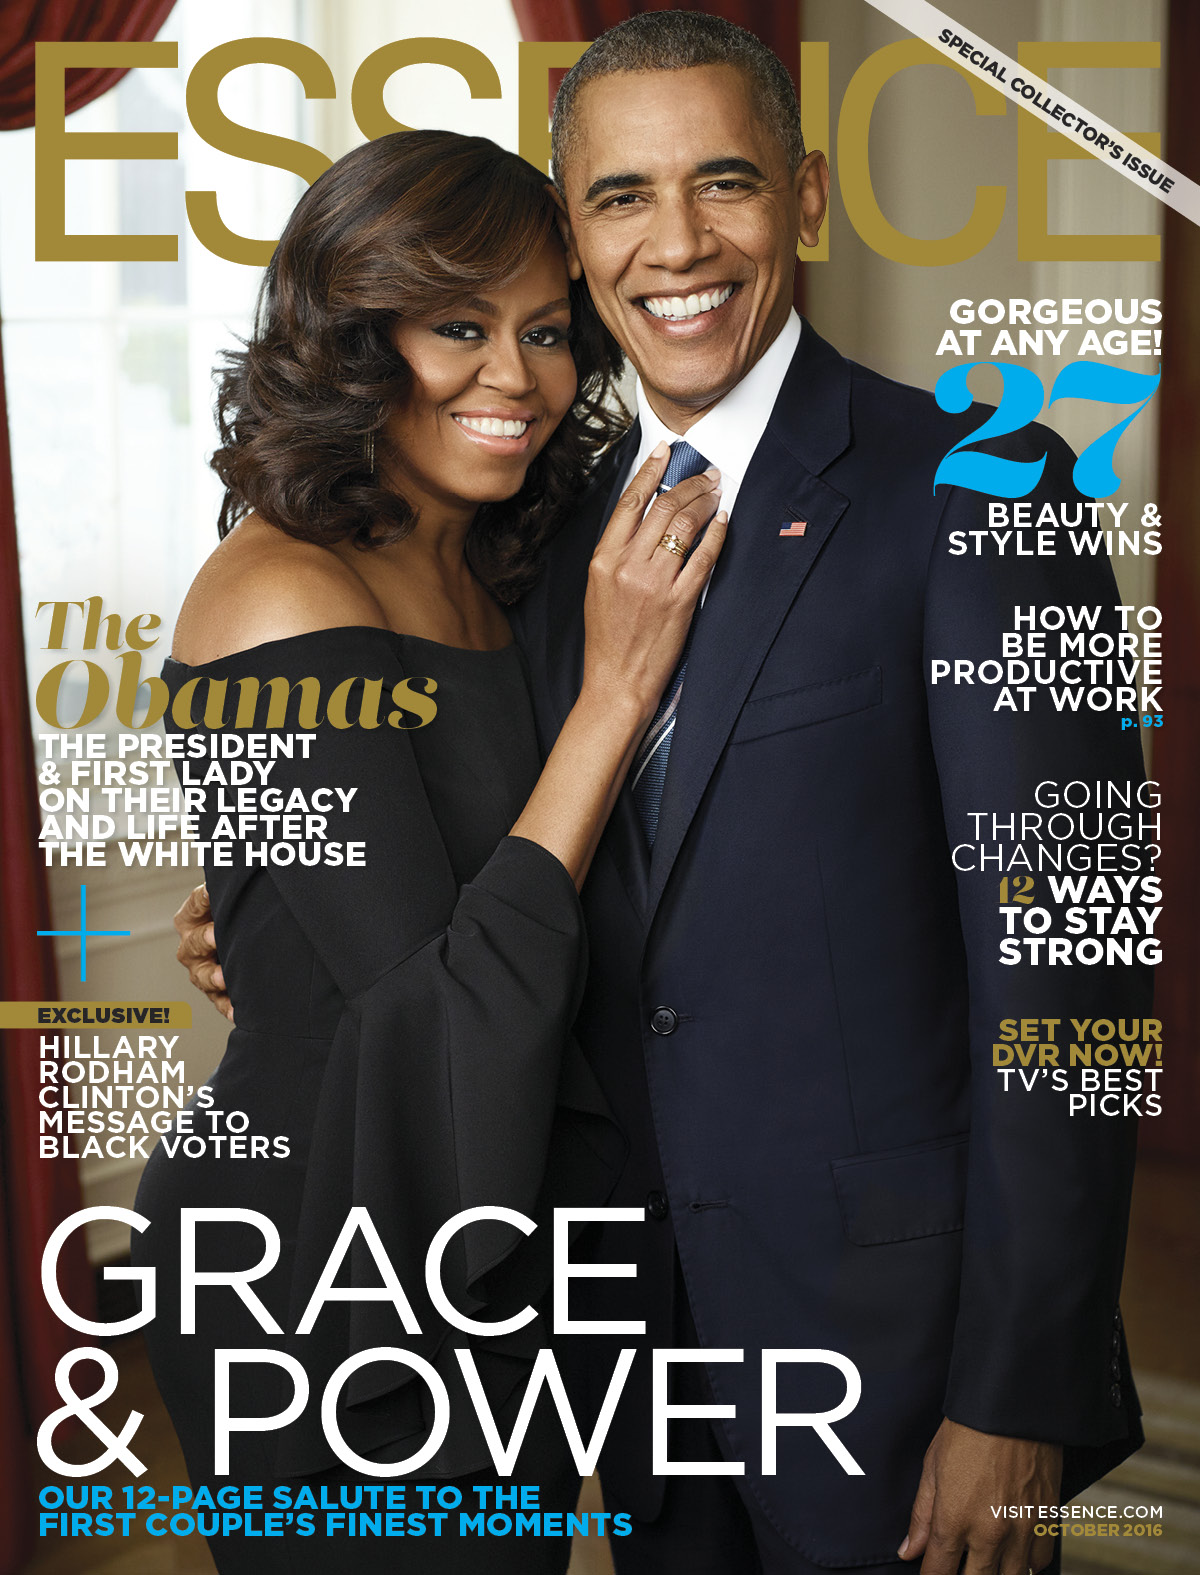 Obama và vợ nắm tay: Hình ảnh của Tổng thống Obama và vợ nắm tay nhau khiến người ta cảm thấy ấm lòng và nhớ đến tình yêu và sự ủng hộ. Xem hình ảnh này sẽ giúp bạn hiểu hơn về tình yêu và sự ủng hộ giữa hai tình nhân.